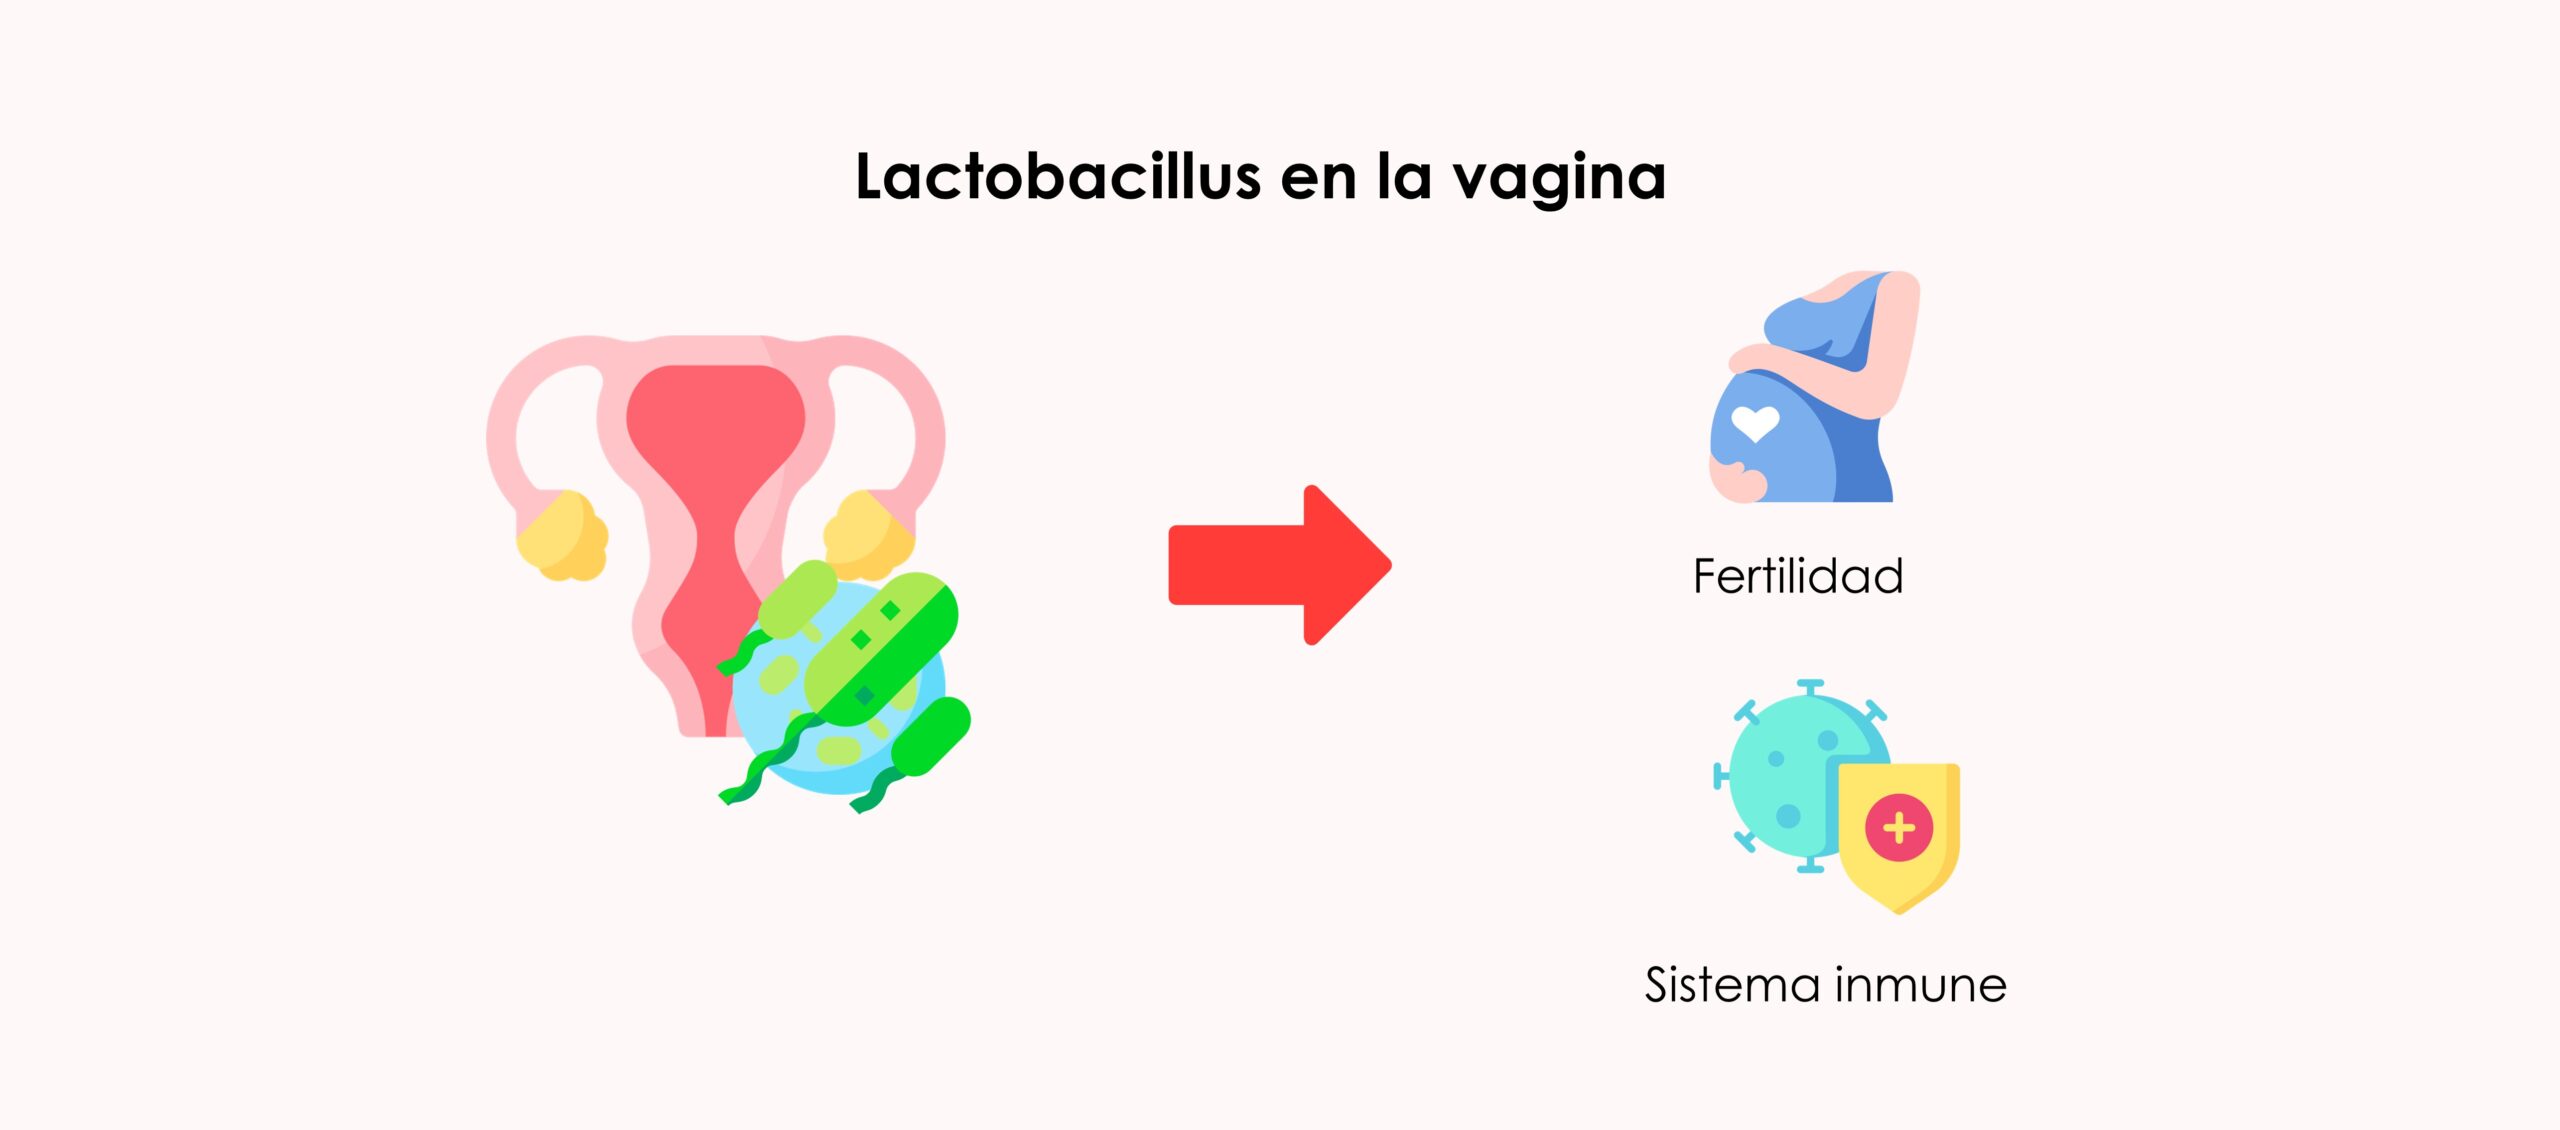 Los lactobacillus protegen el sistema inmune y favorecen el embarazo